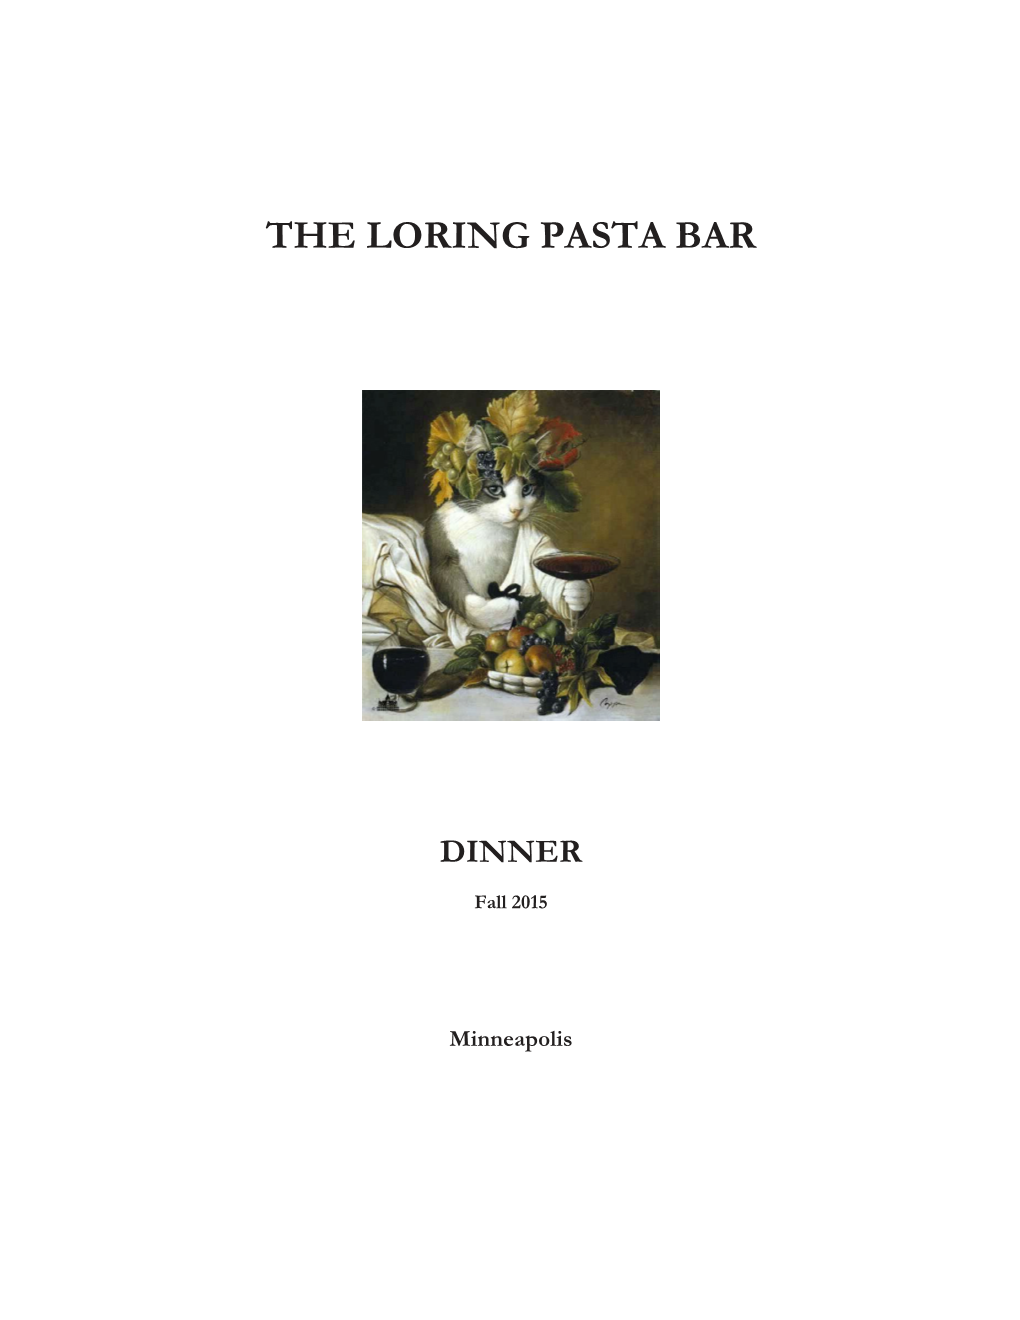 The Loring Pasta Bar